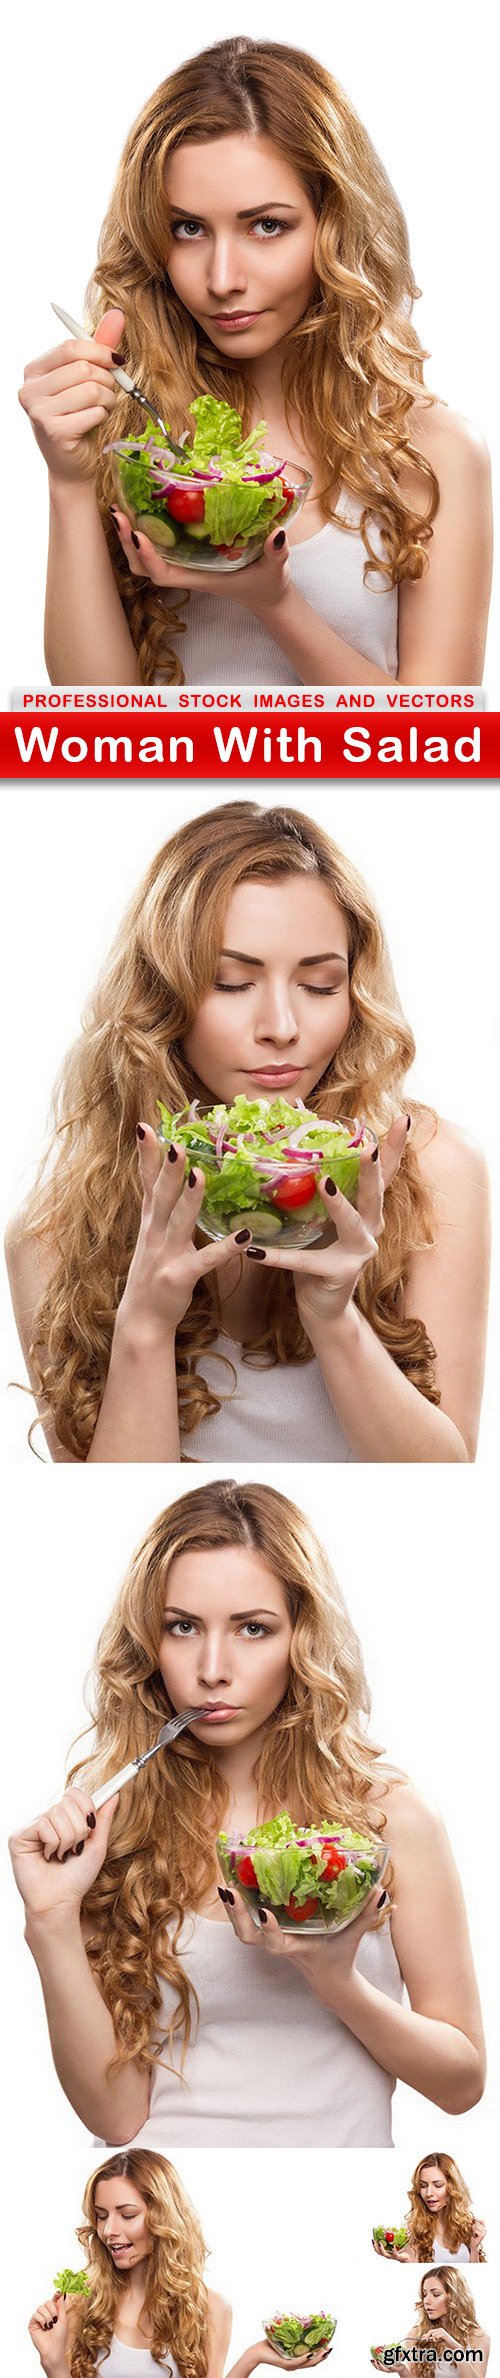 Woman With Salad - 6 UHQ JPEG